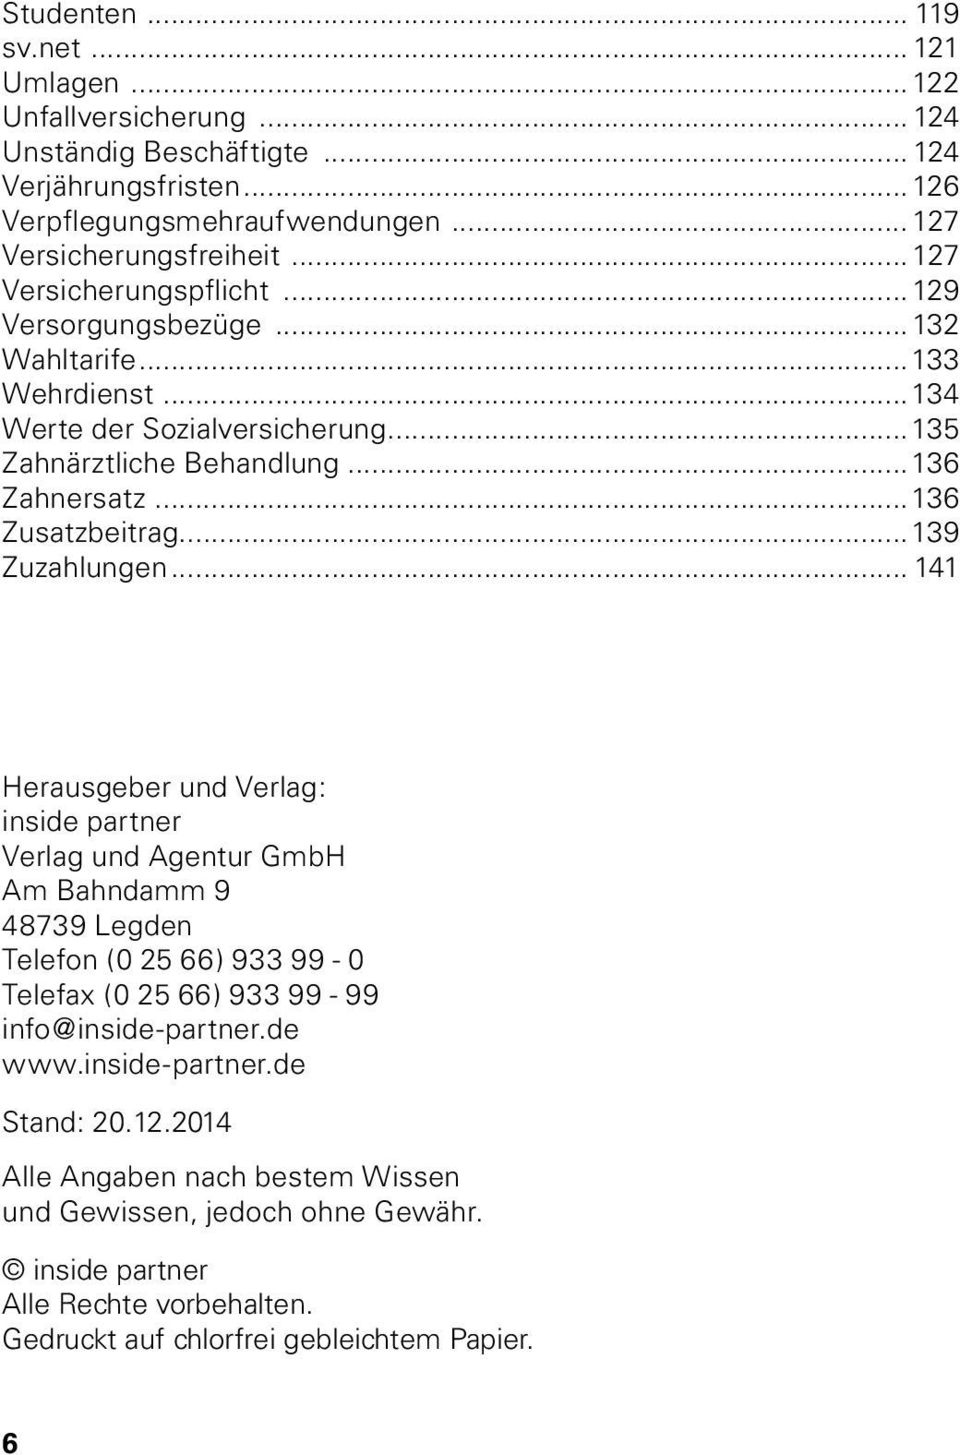 ..139 Zuzahlungen... 141 Herausgeber und Verlag: inside partner Verlag und Agentur GmbH Am Bahndamm 9 48739 Legden Telefon (0 25 66) 933 99-0 Telefax (0 25 66) 933 99-99 info@inside-partner.